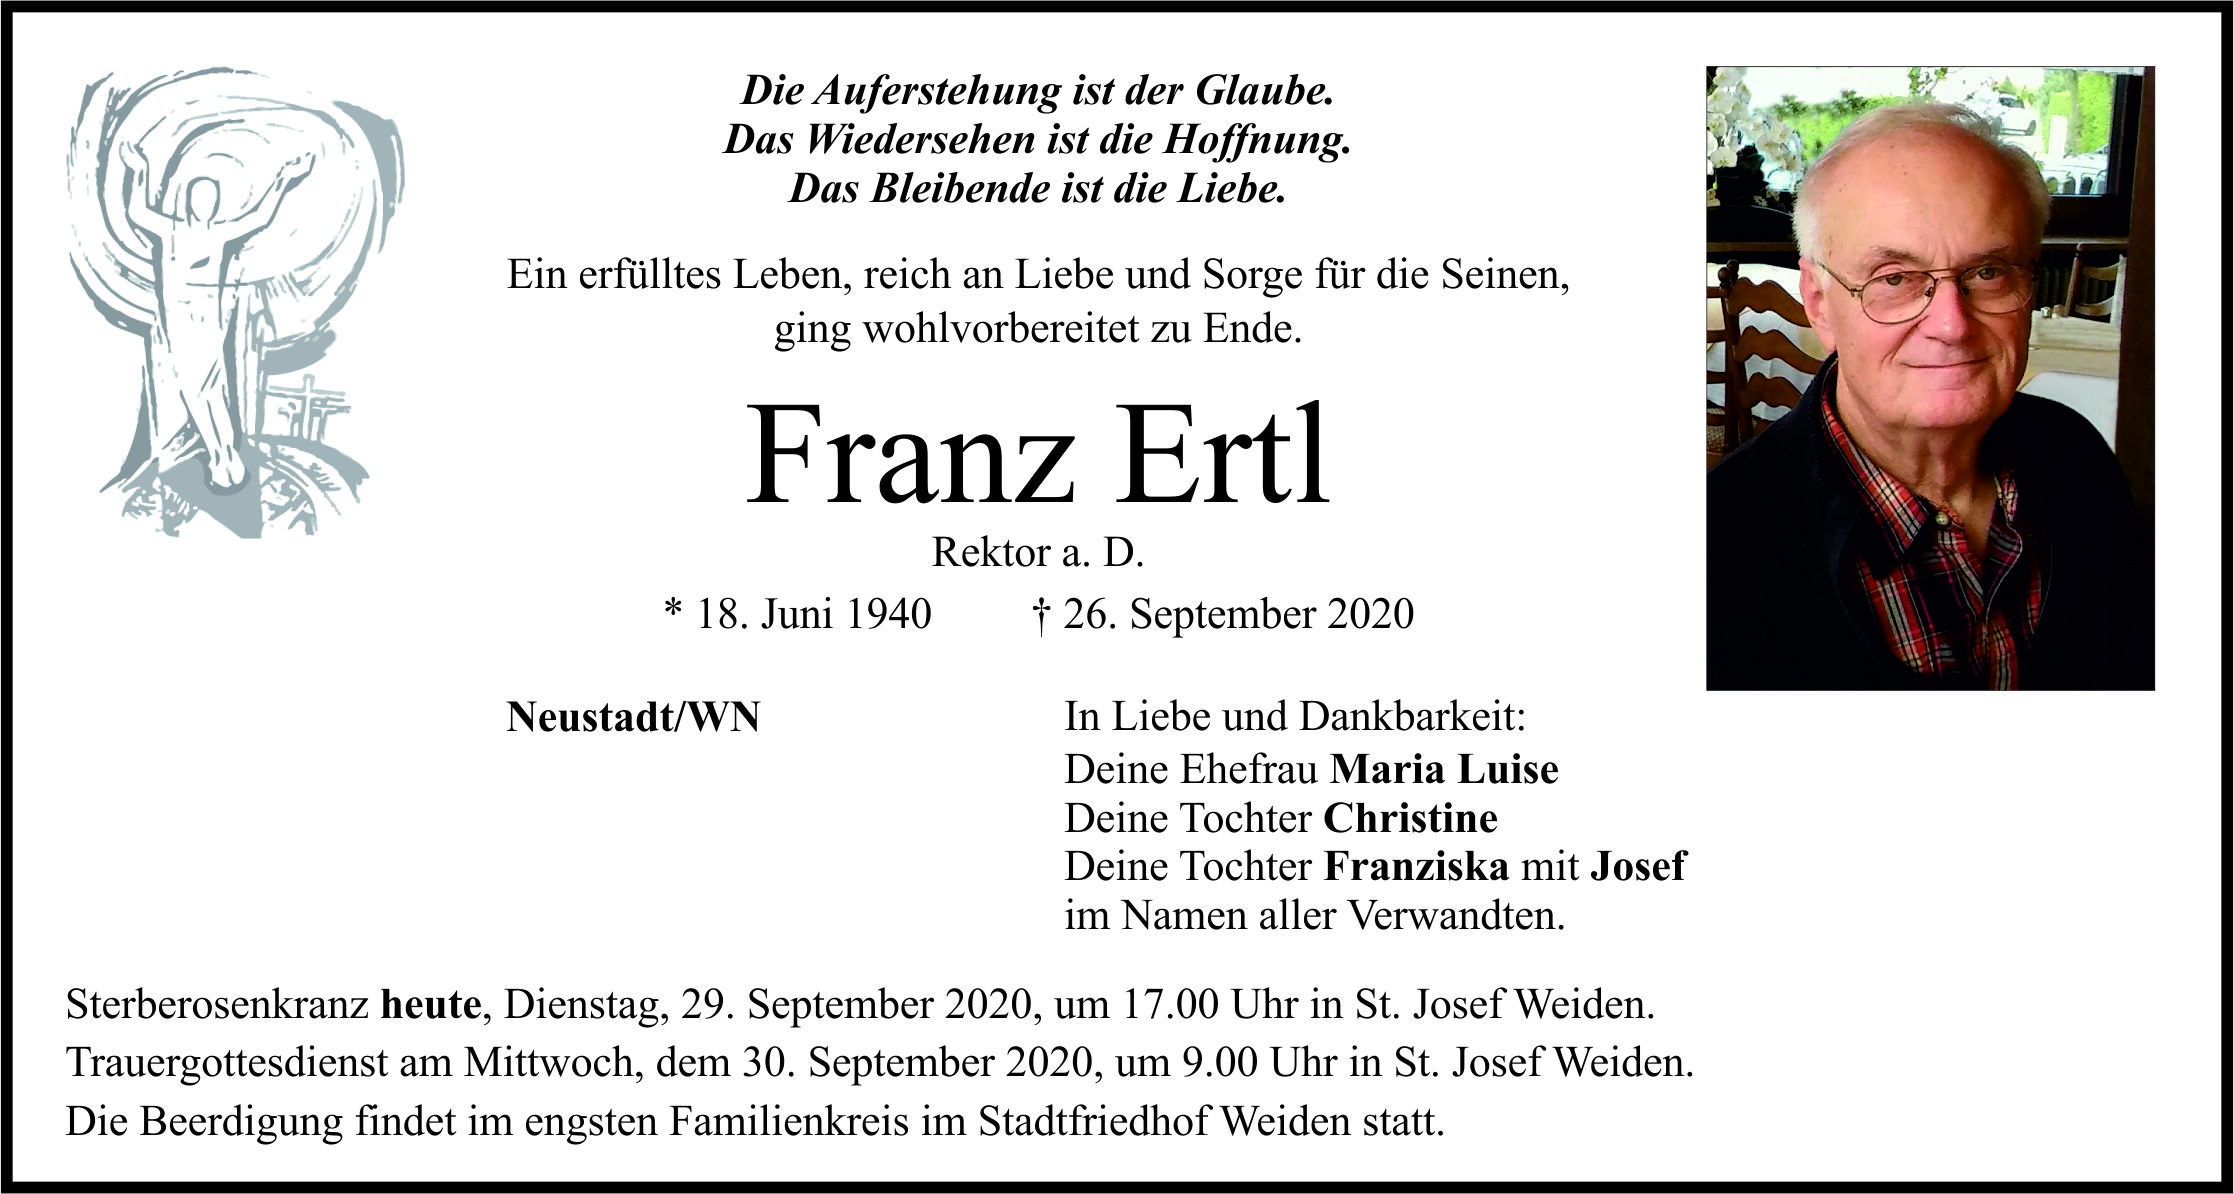 Traueranzeige Franz Ertl, Neustadt.WN